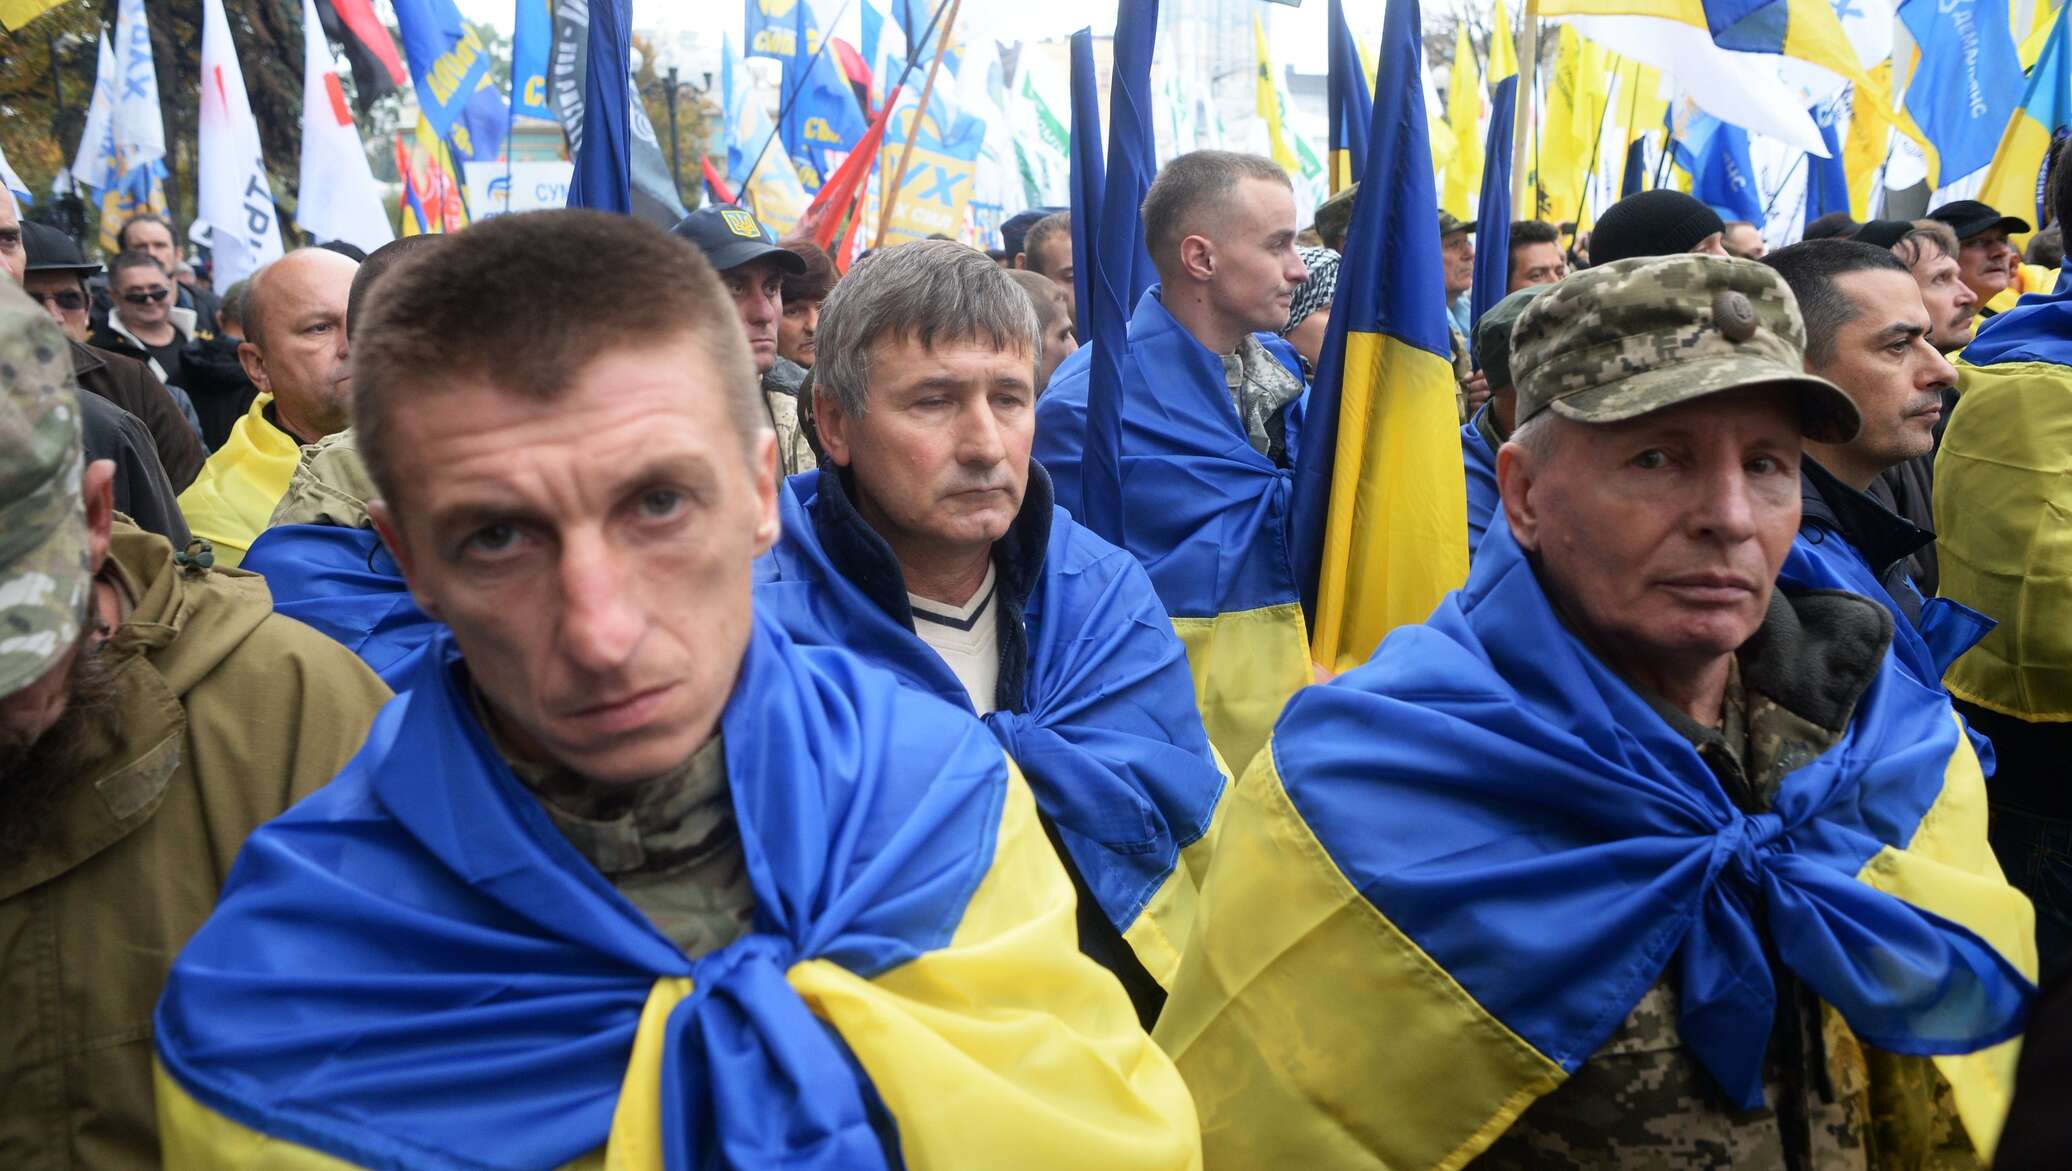 Свежие новости украины видео ютуб. Украинец в шоке. Патриотичные украинцы. Хохлы в шоке. Украинцы фото.